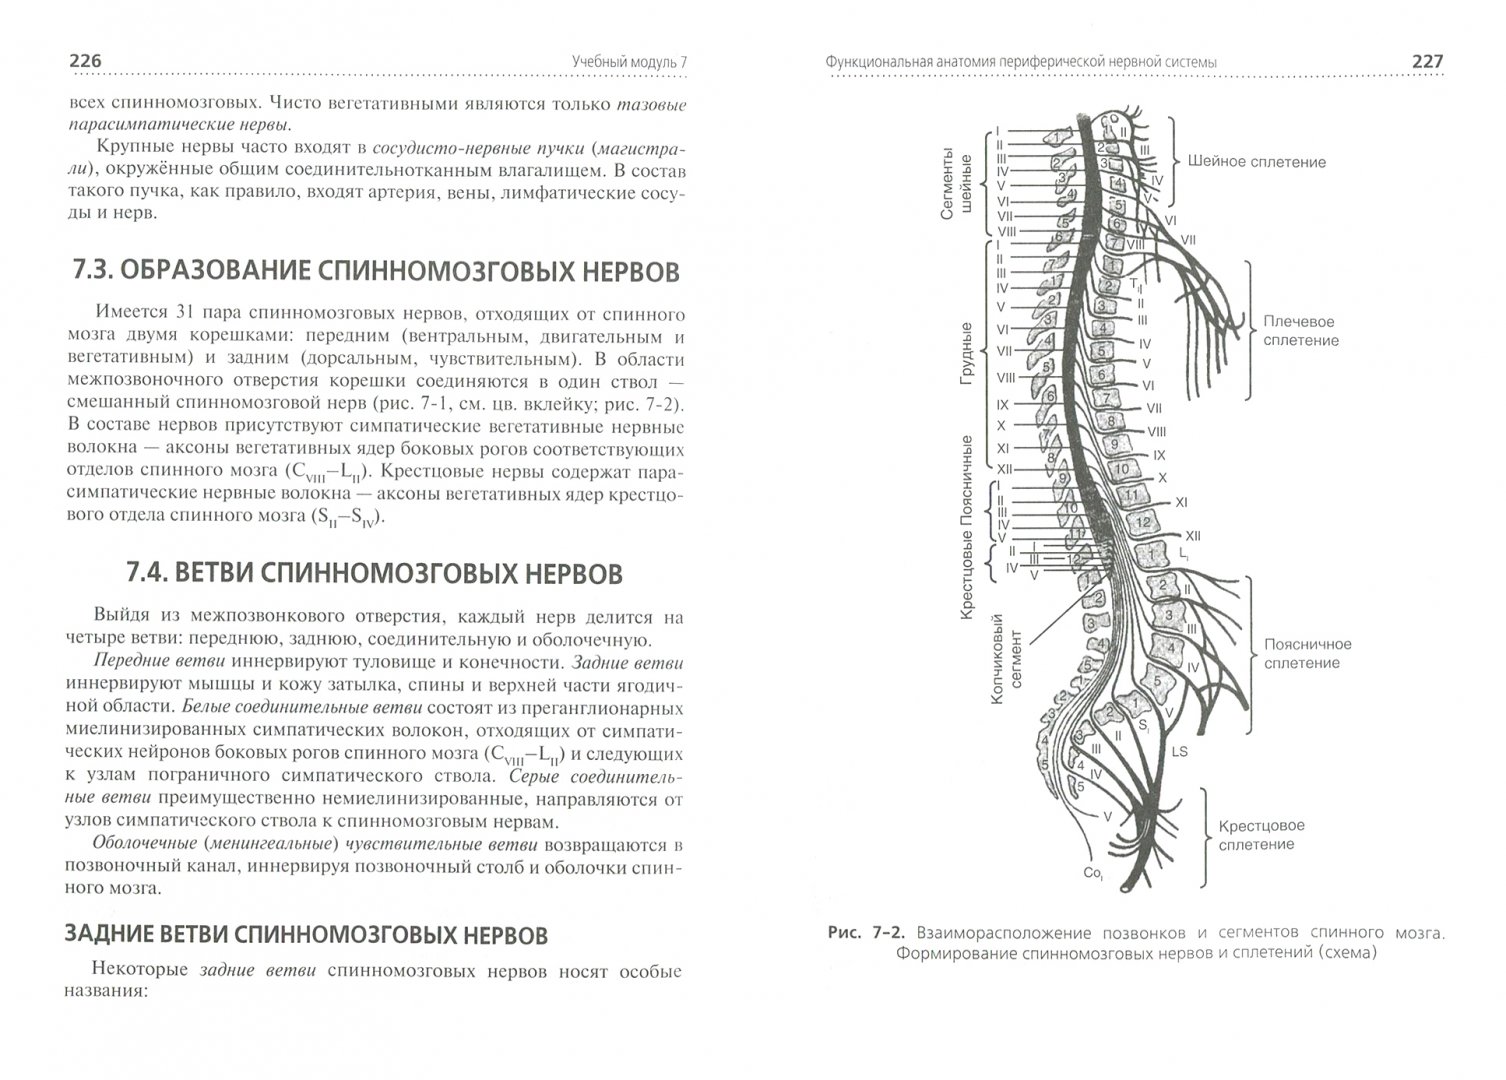 Иллюстрация 1 из 19 для Анатомия и физиология человека. Учебник - Смольянникова, Фалина, Сагун | Лабиринт - книги. Источник: Лабиринт